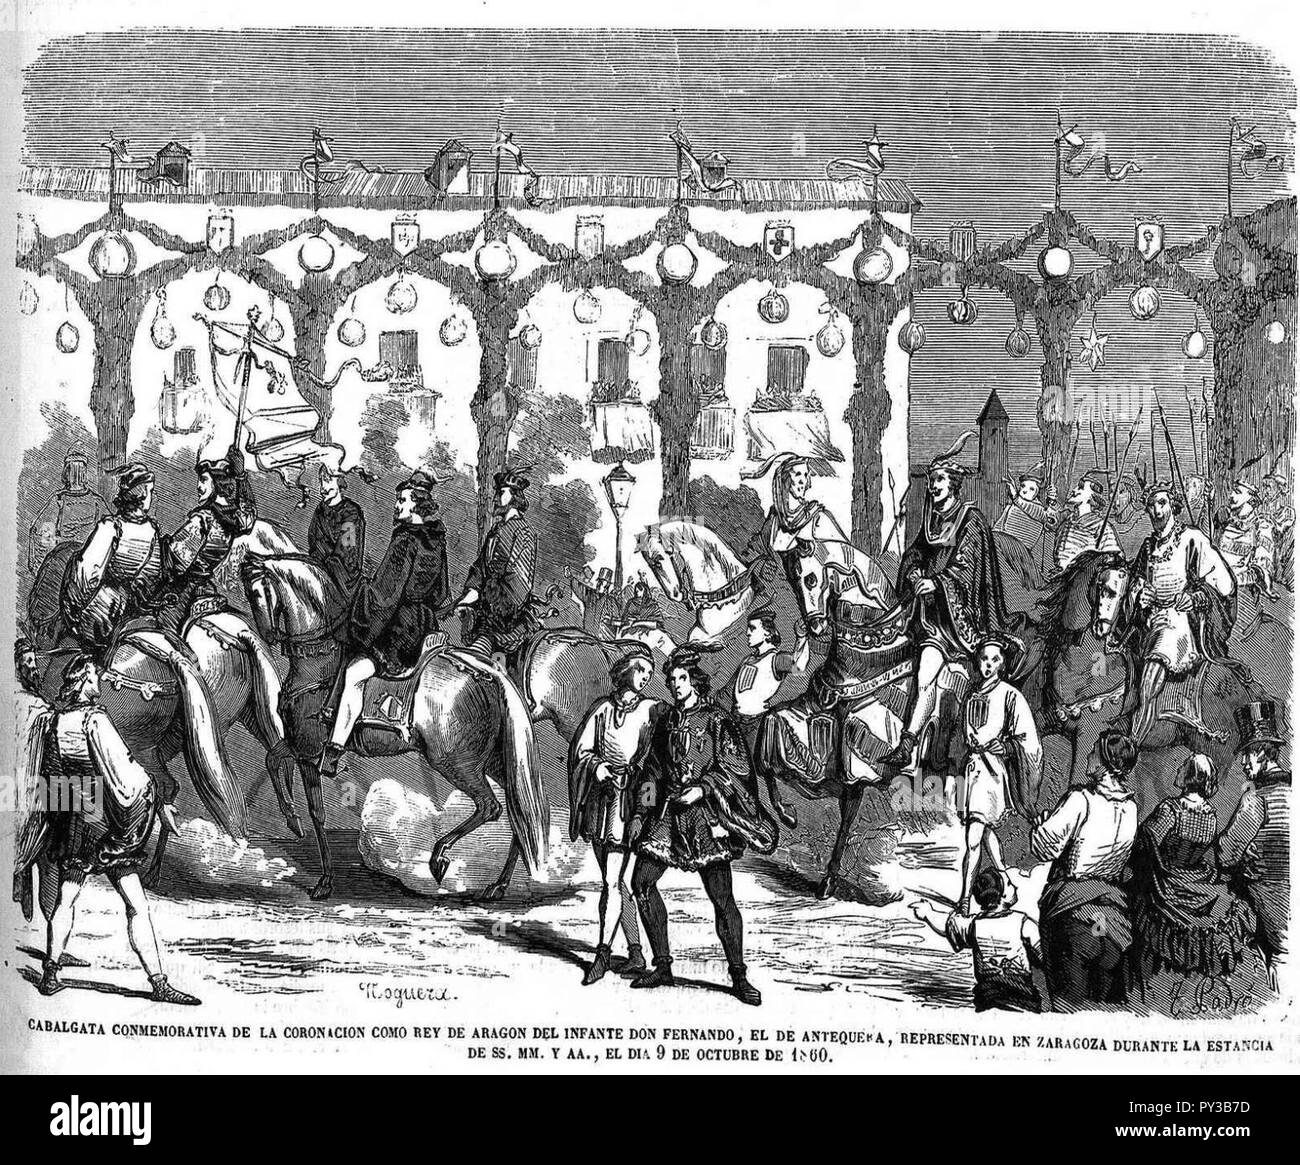 Cabalgata conmemorativa de la coronación como rey de Aragón del infante don Fernando, en Zaragoza, 9 de octubre de 1860. Stock Photo